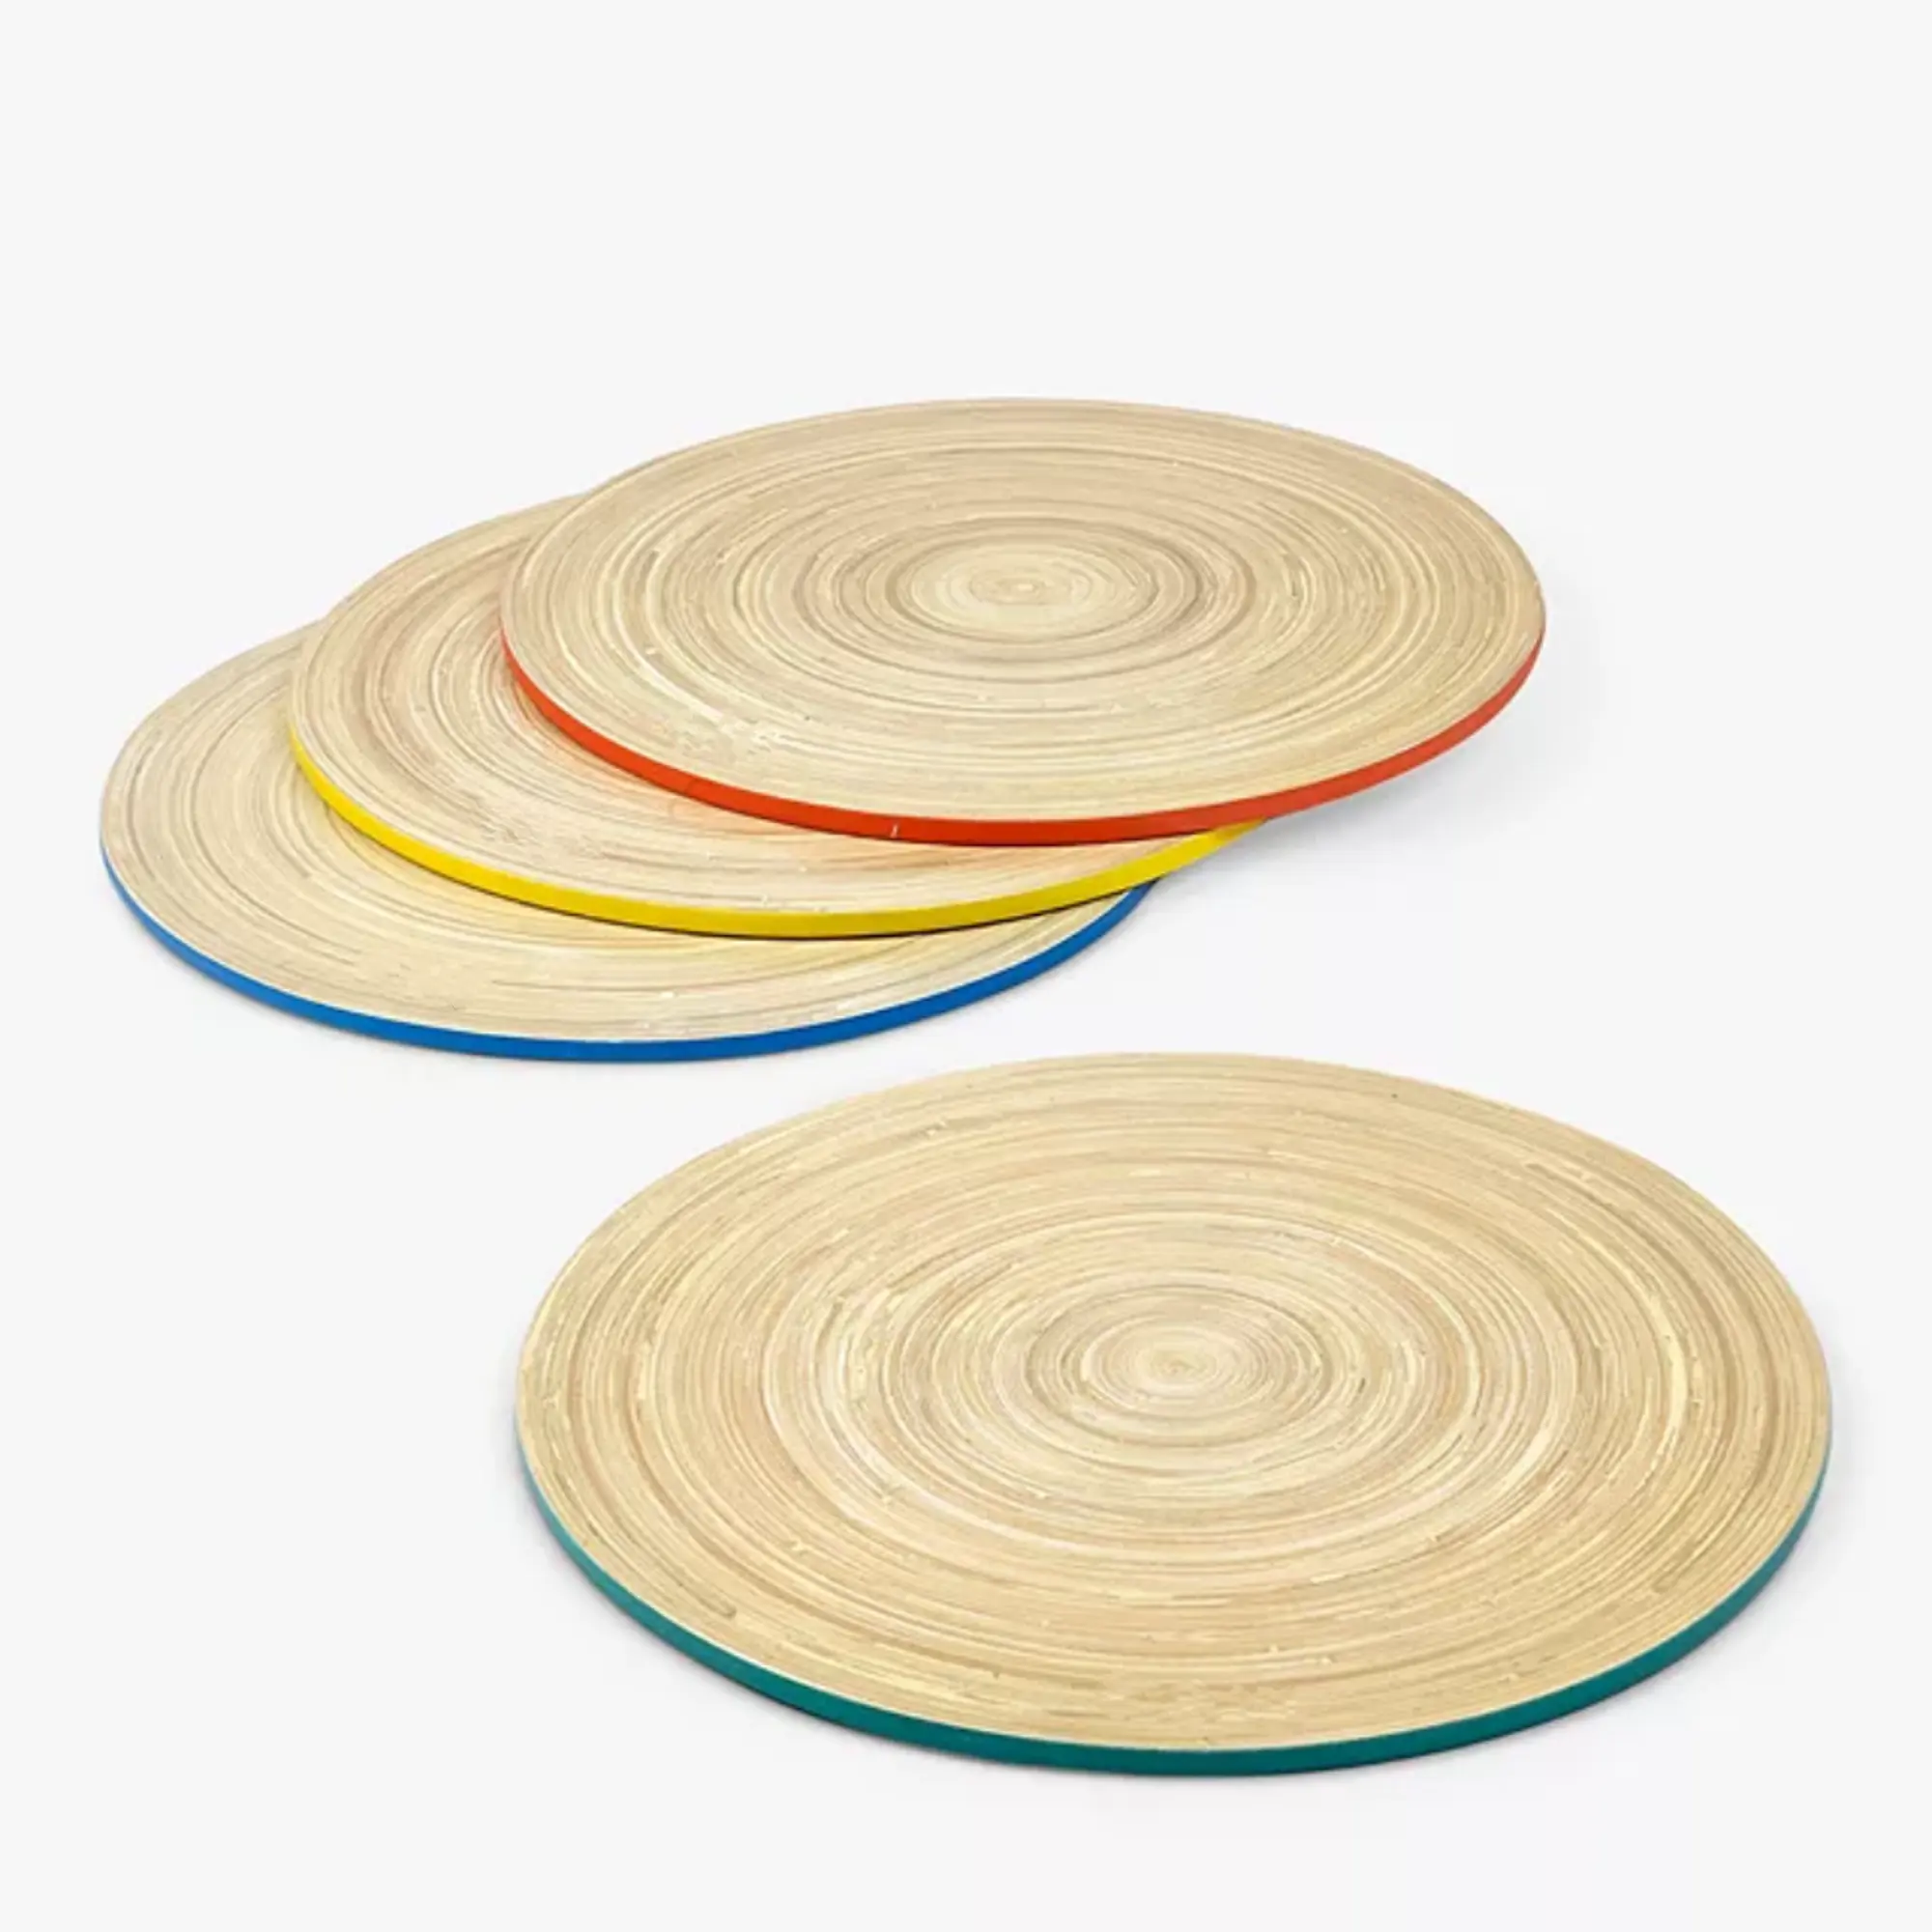 Лучшие продажи, круглые салфеты из бамбука, набор тарелок из 4 красочных изделий ручной работы, оптовая продажа от Вьетнама